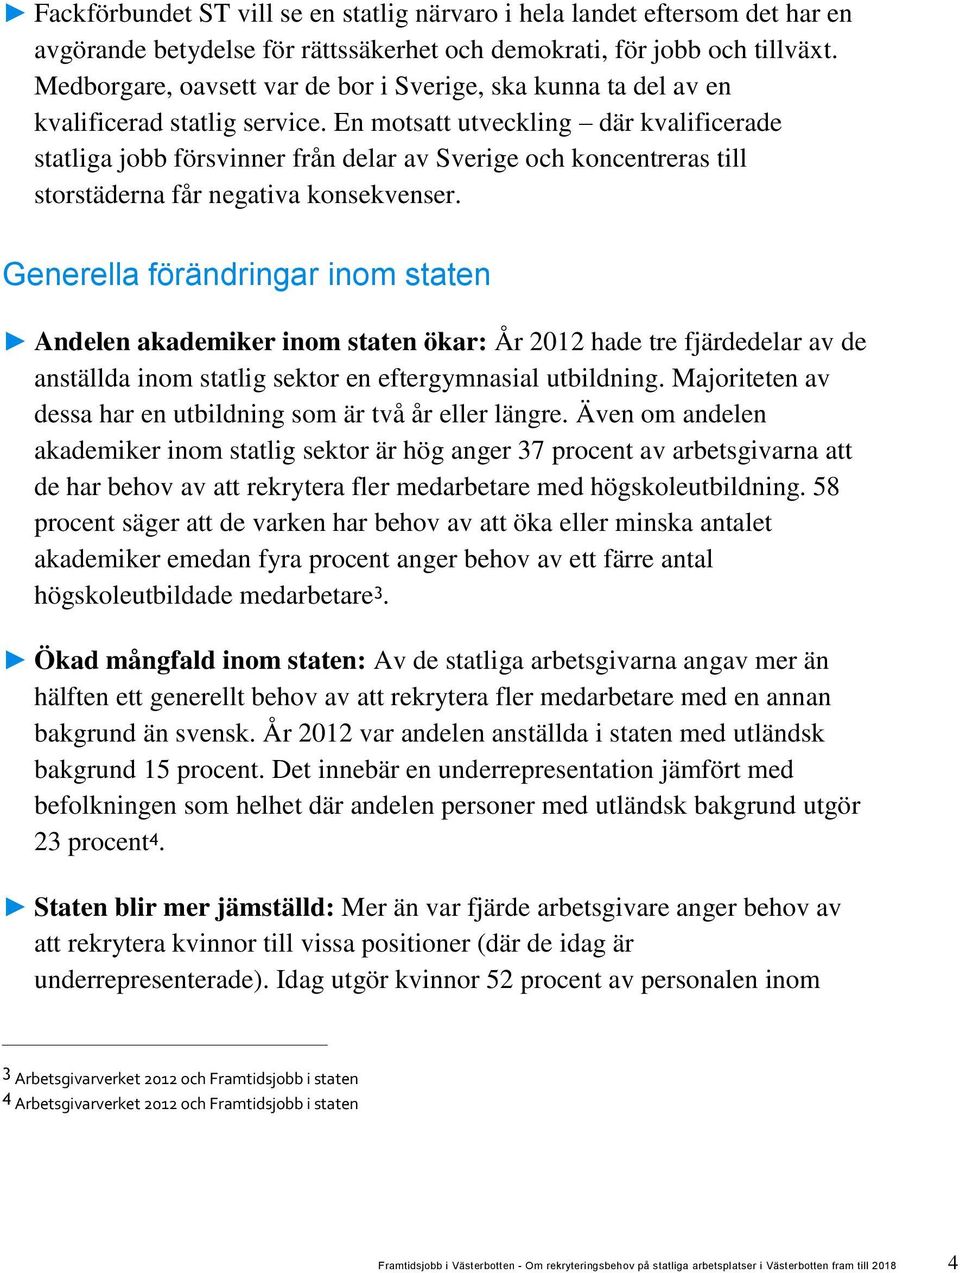 En motsatt utveckling där kvalificerade statliga jobb försvinner från delar av Sverige och koncentreras till storstäderna får negativa konsekvenser.